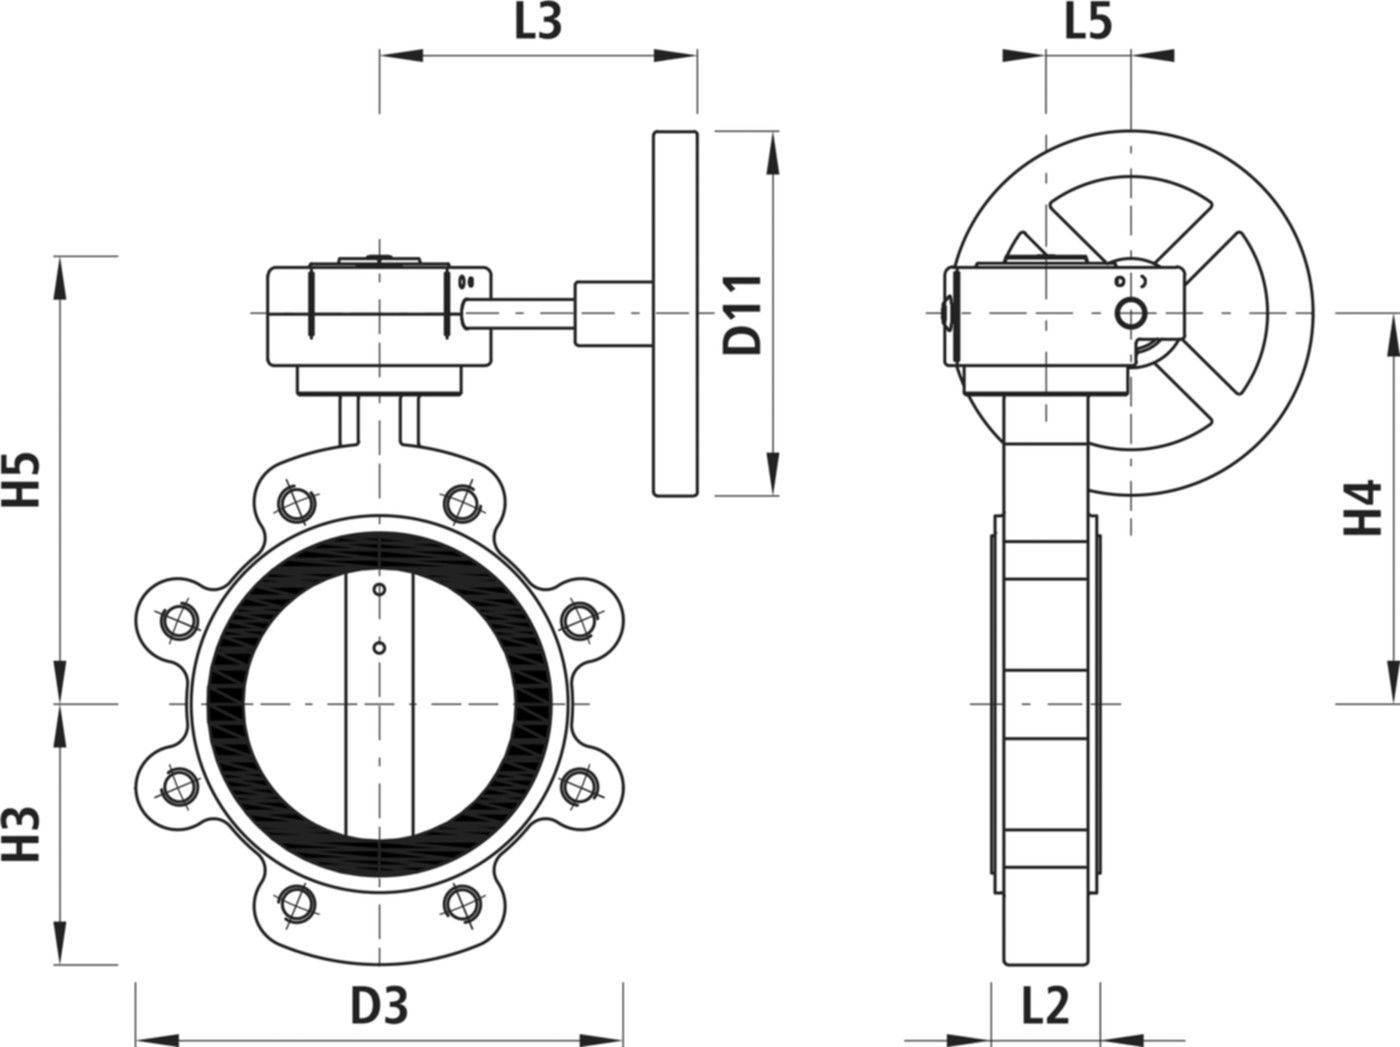 Absperrklappe mit Getriebe Typ LI 9943 DN 80 PN 16 - Hawle Absperrklappen